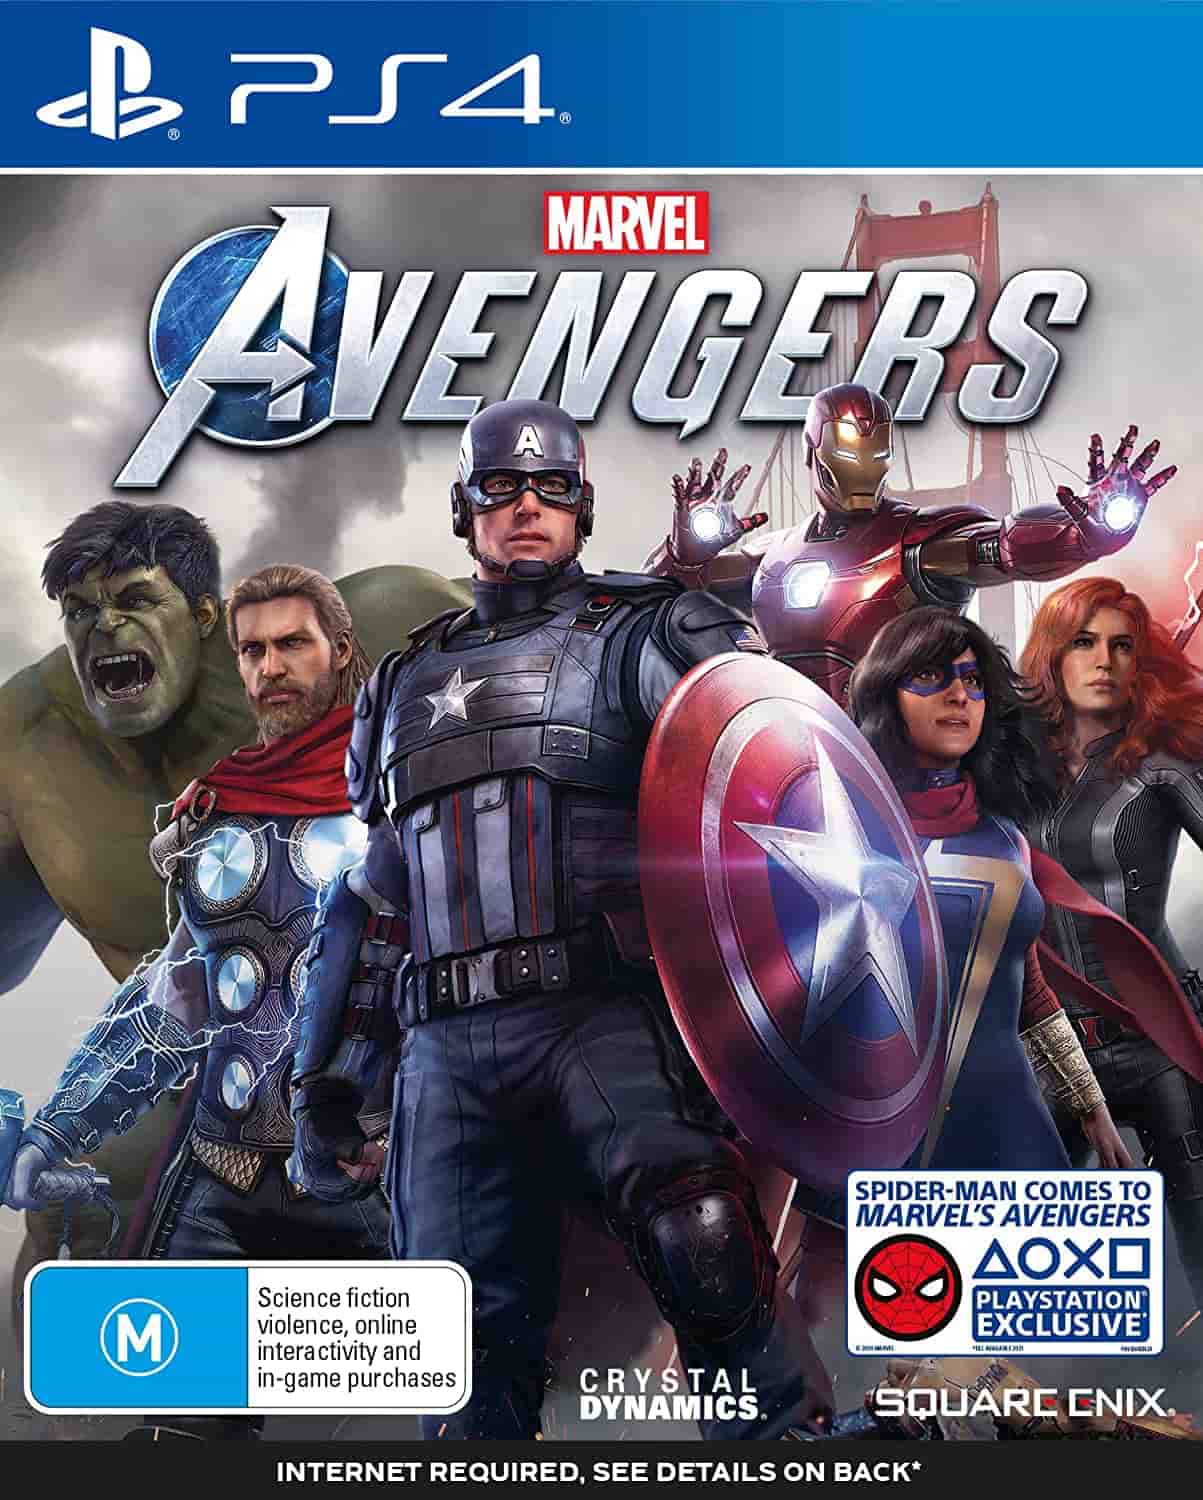 MarvelsAvengersPS4Box.jpg